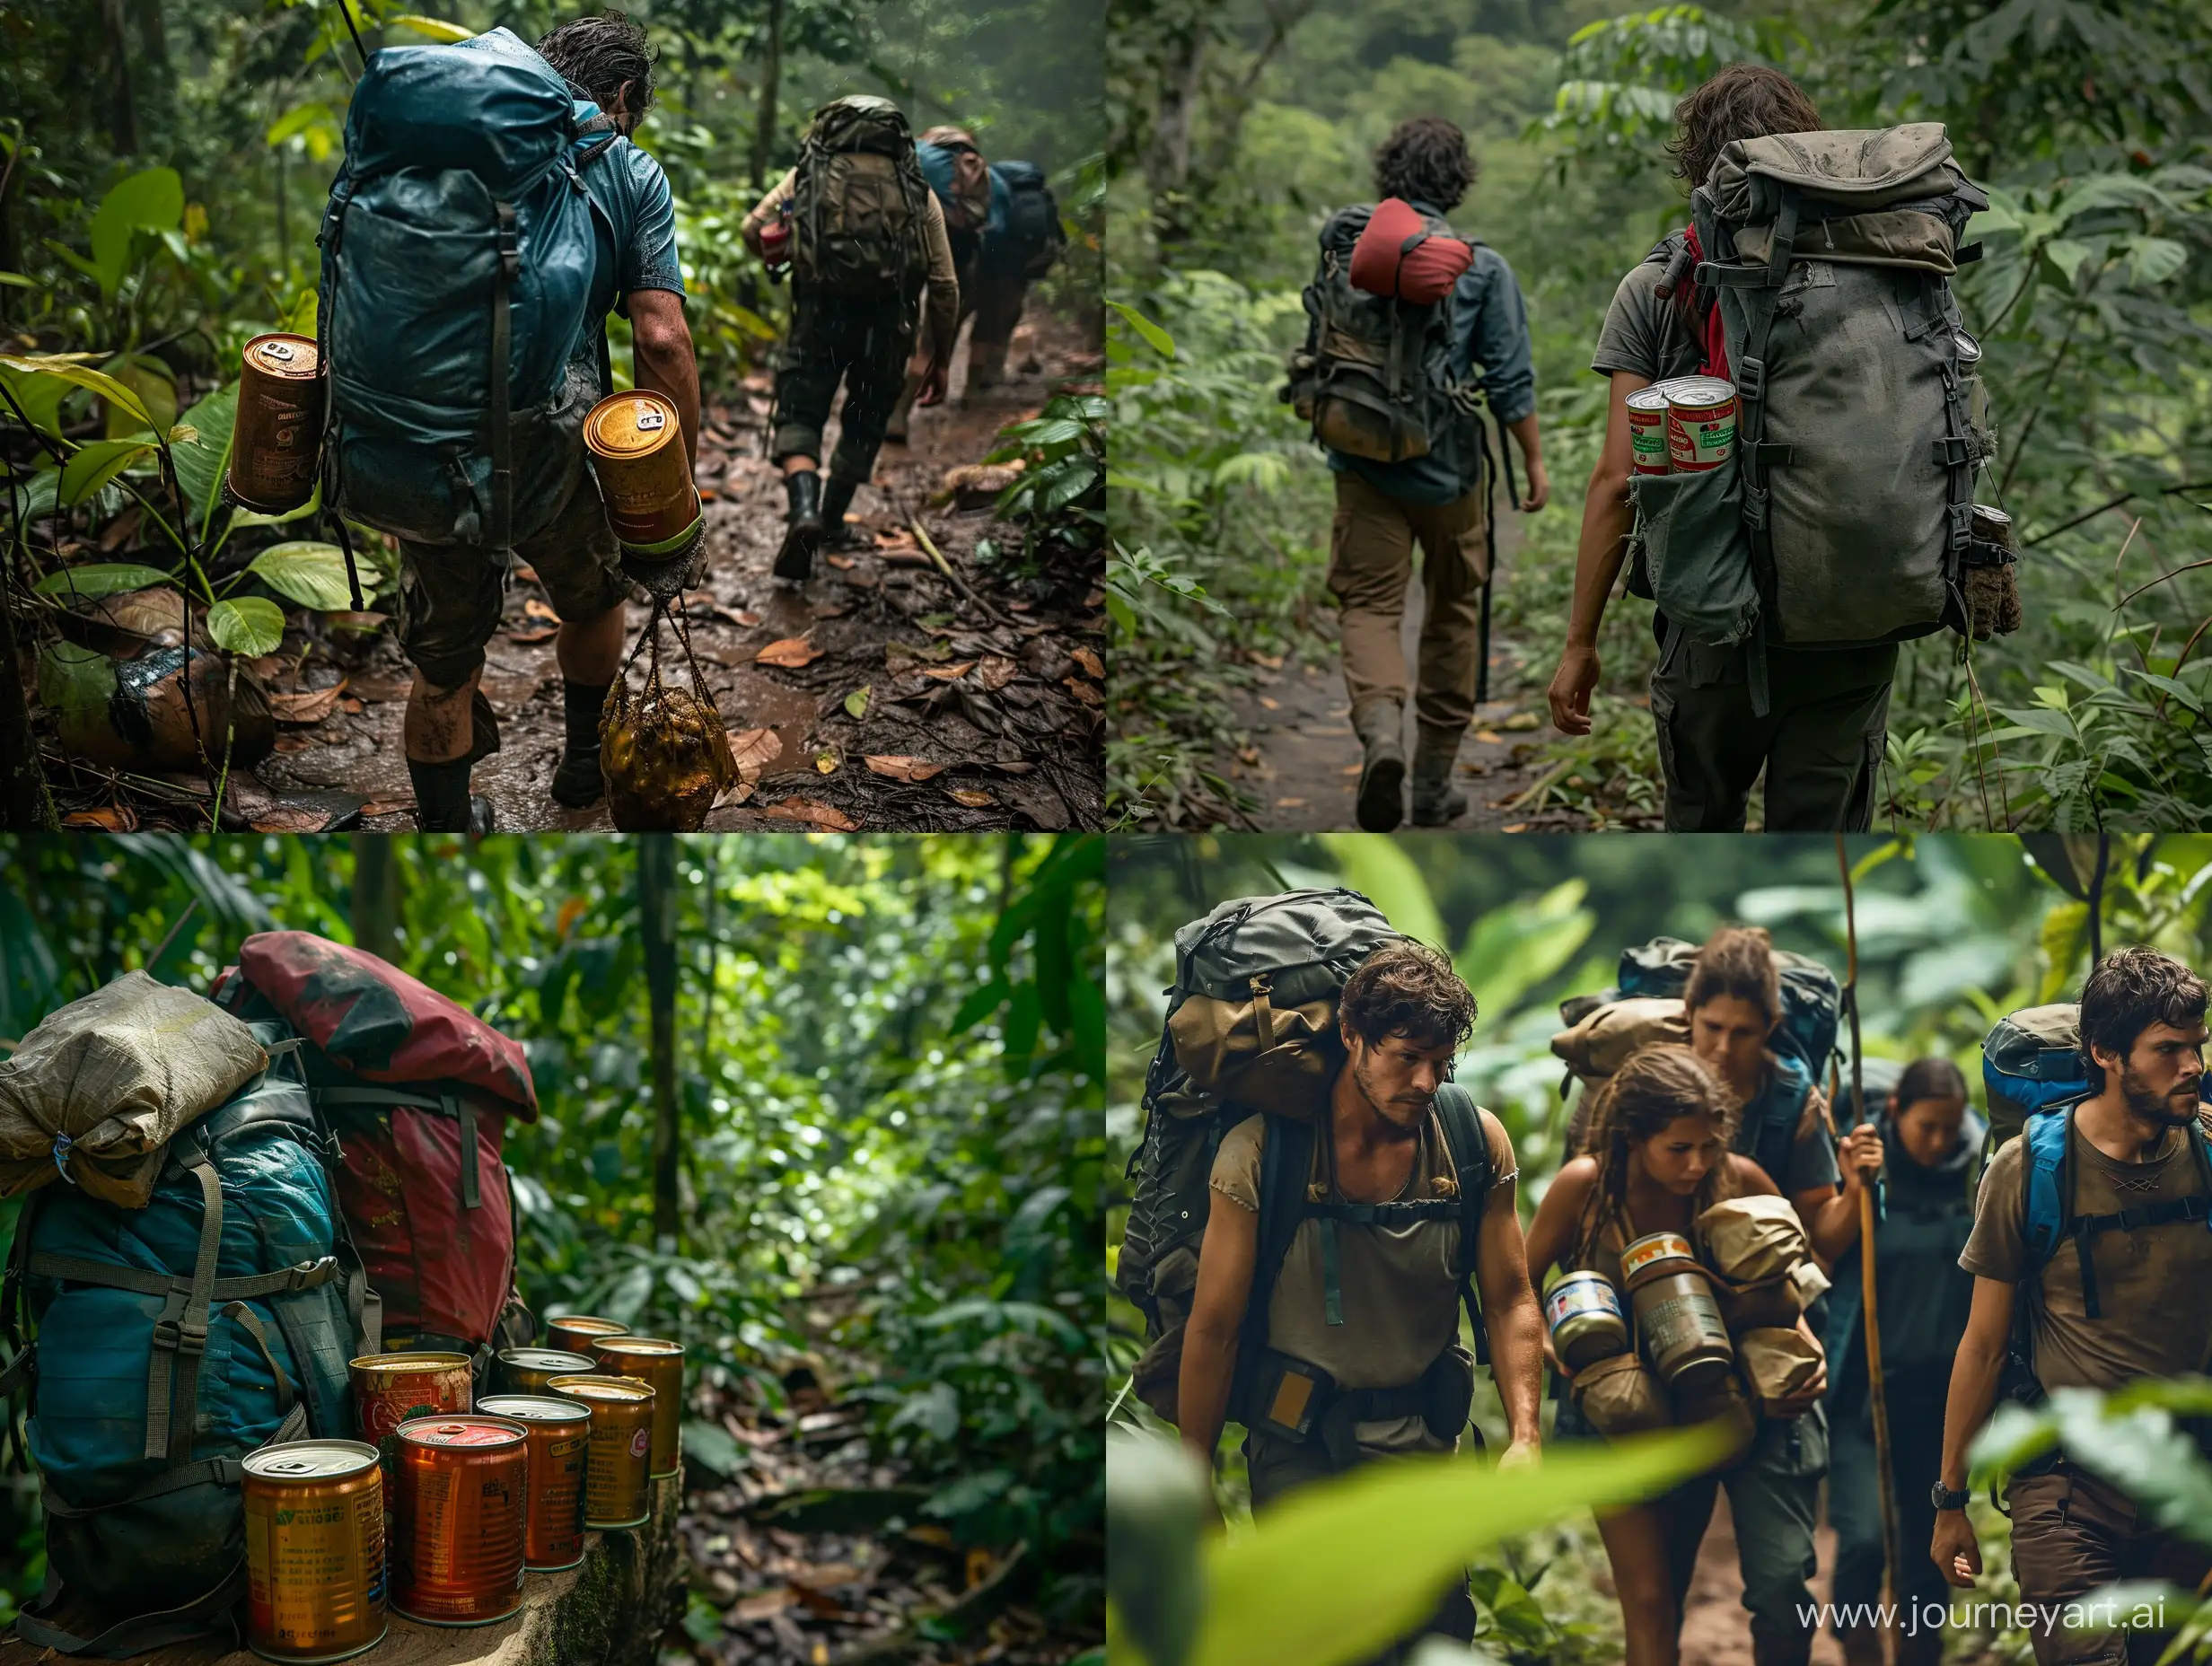 В рюкзаках путников осталось совсем немного консервов, действие происходит в джунглях Южной Америки